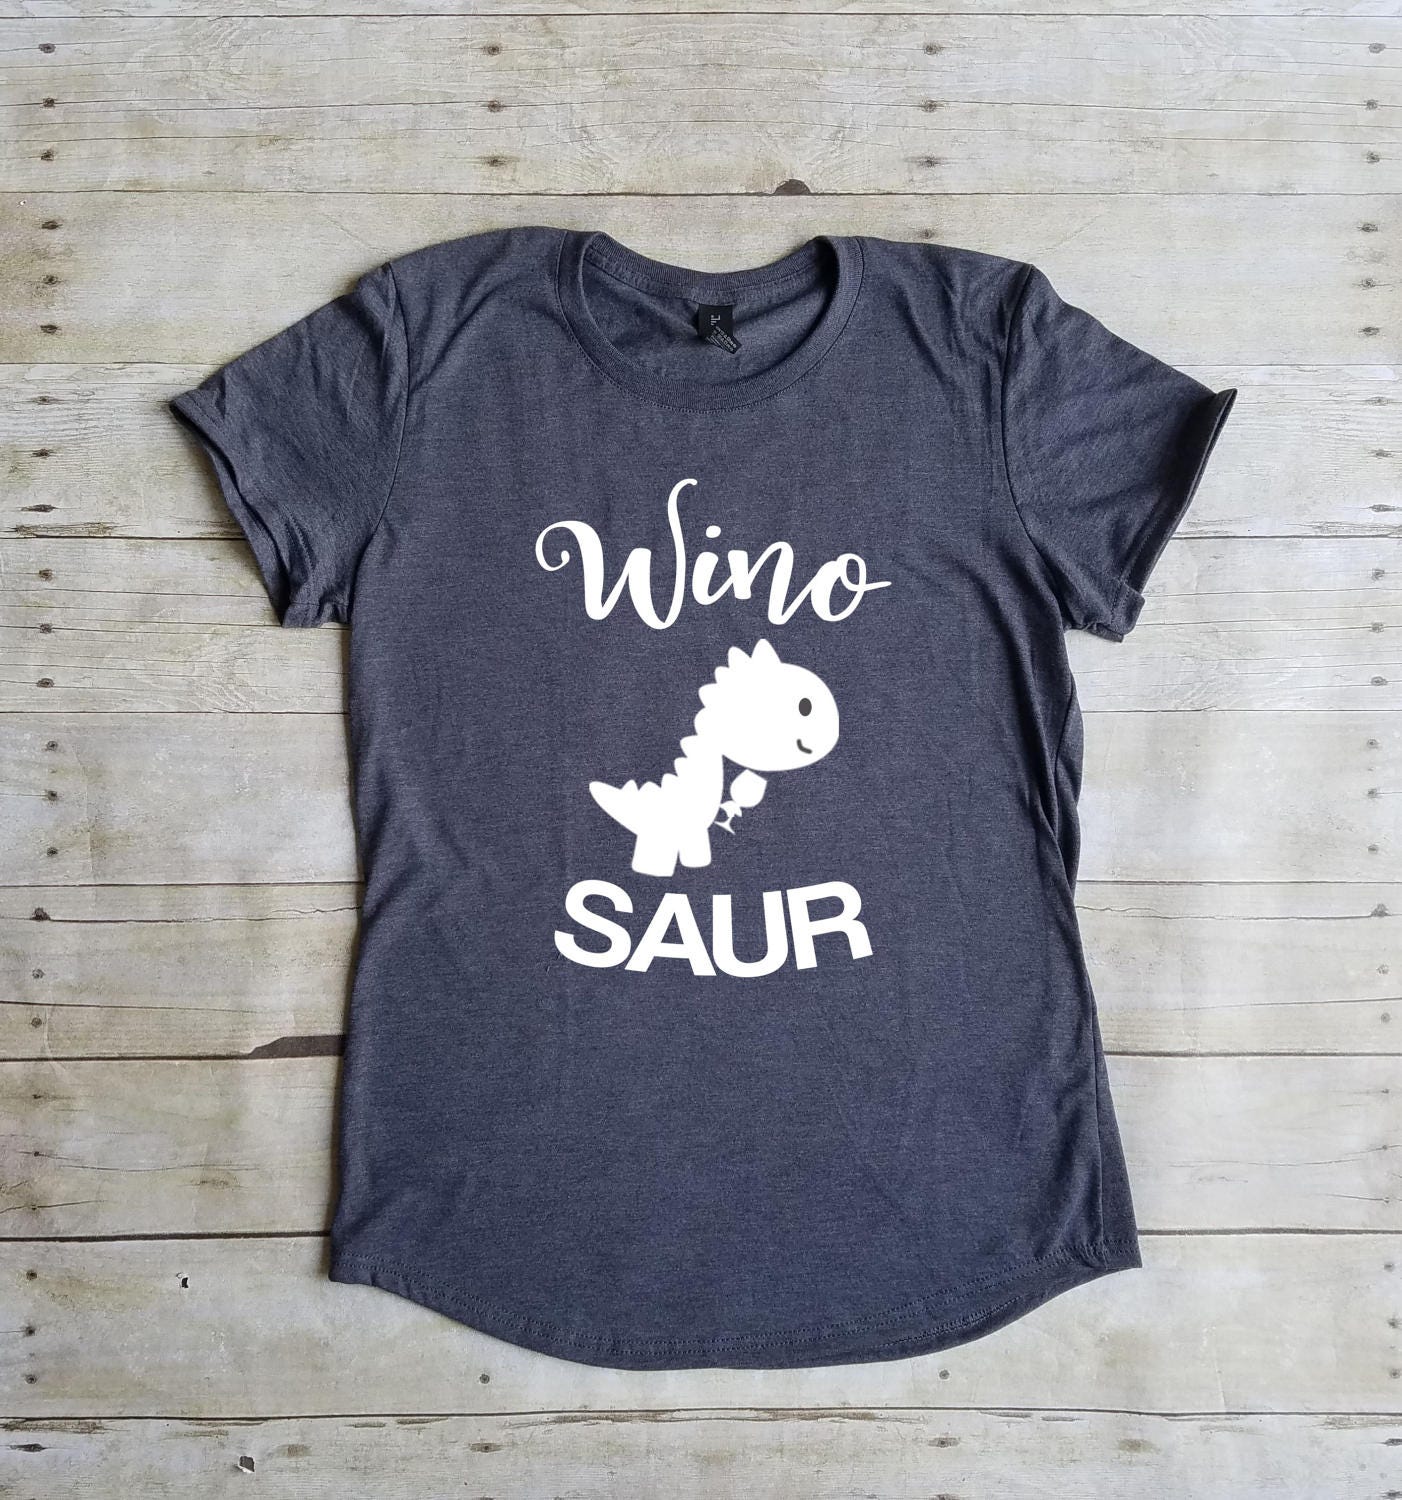 Winosaur Shirt, Wine Shirt, Funny, Wino Saur